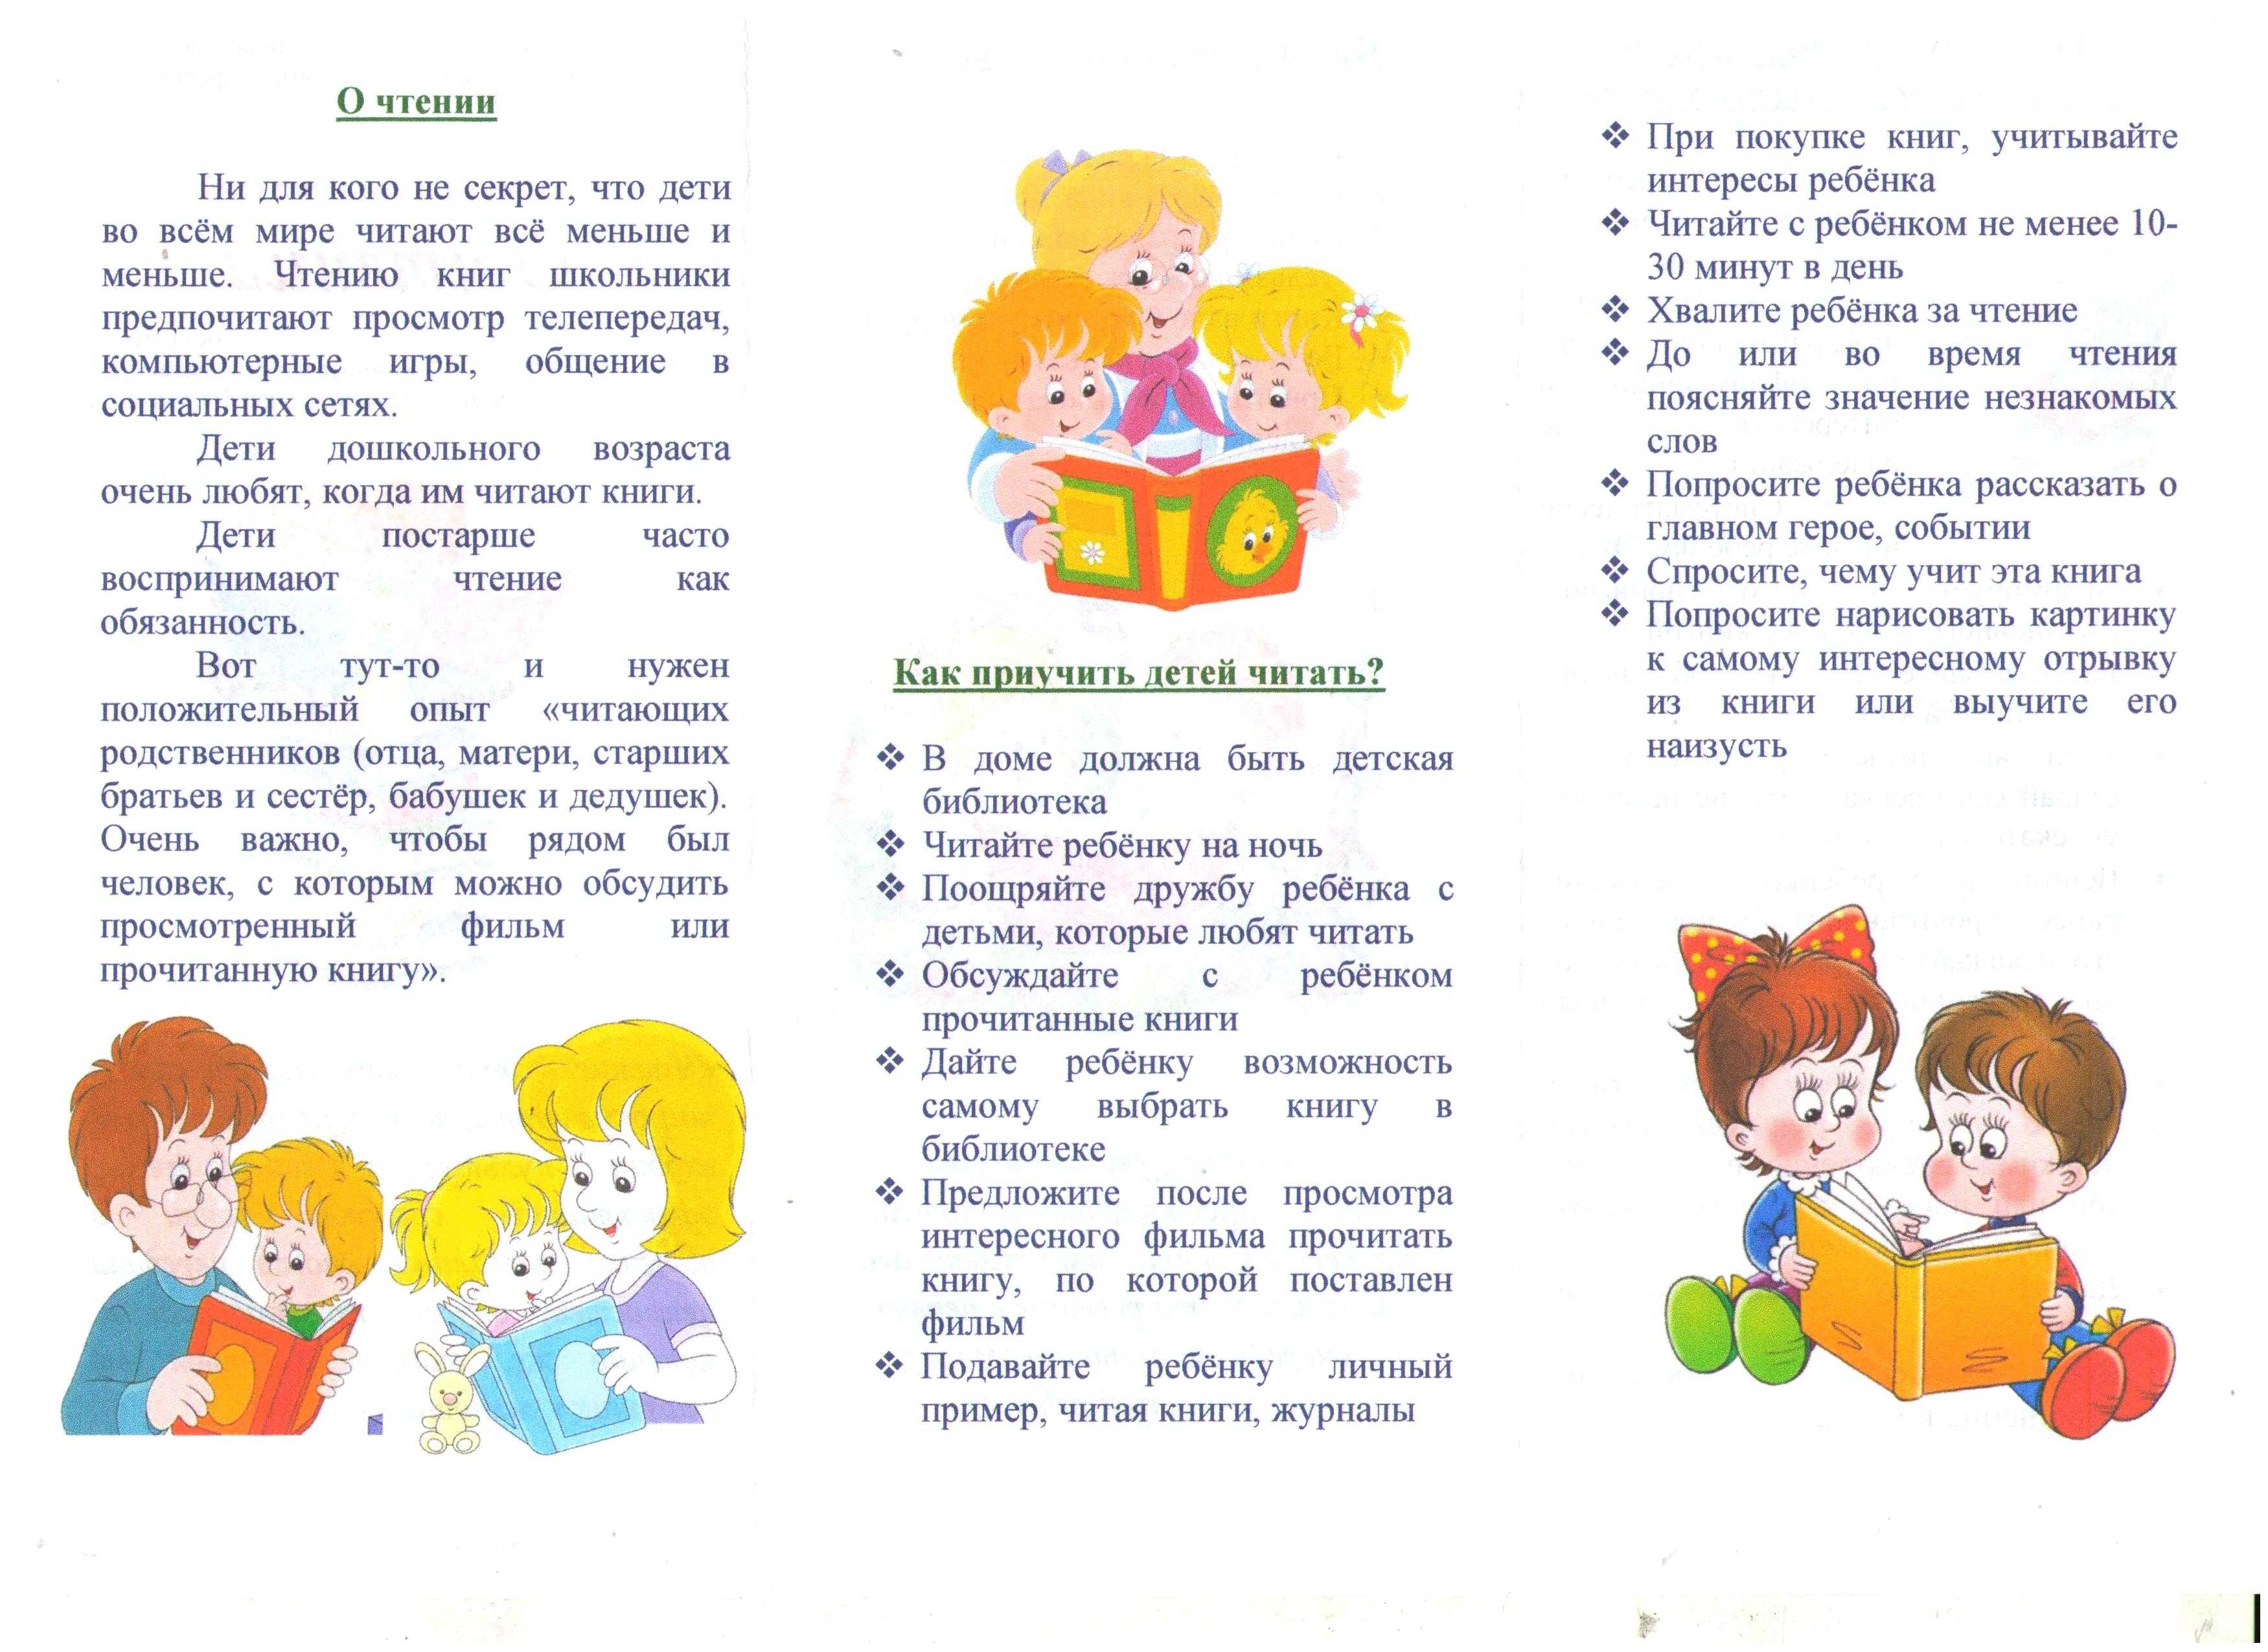 Конспекты занятий по художественной литературе во 2 младшей группе (дети 3-4 года) в доу